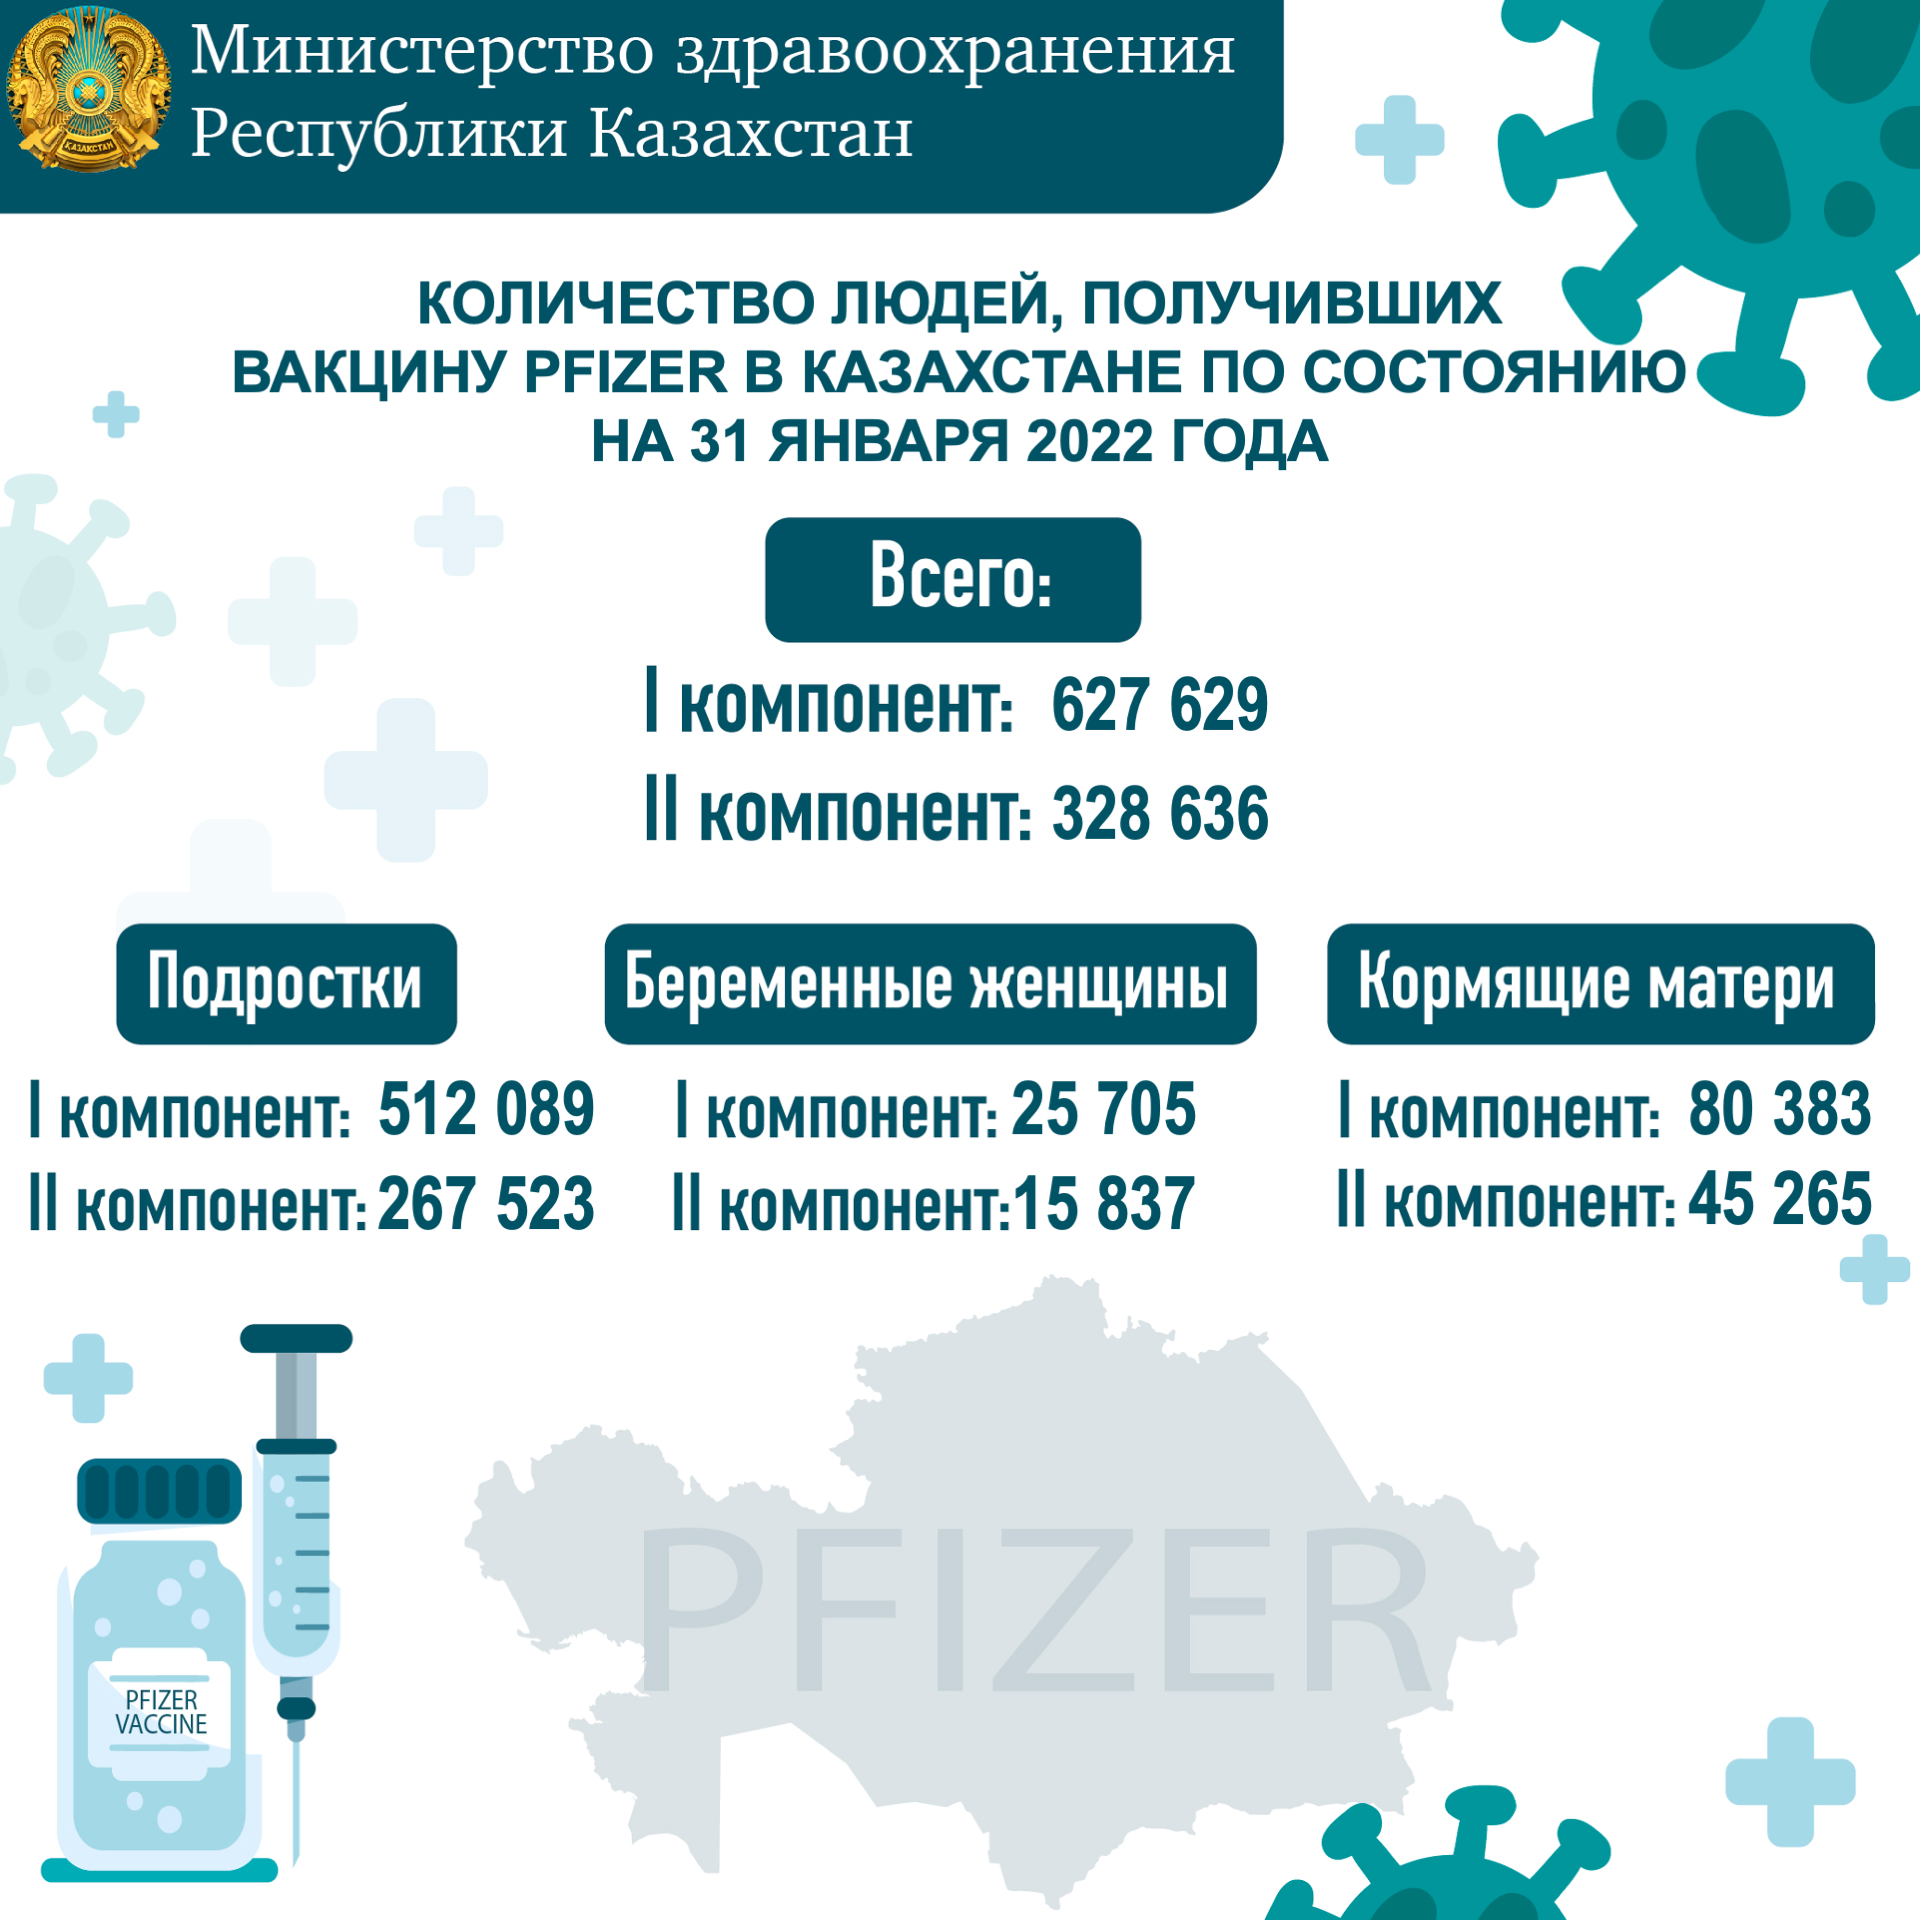 Количество людей, получивших вакцину PFIZER в Казахстане по состоянию на 31 января 2022 года